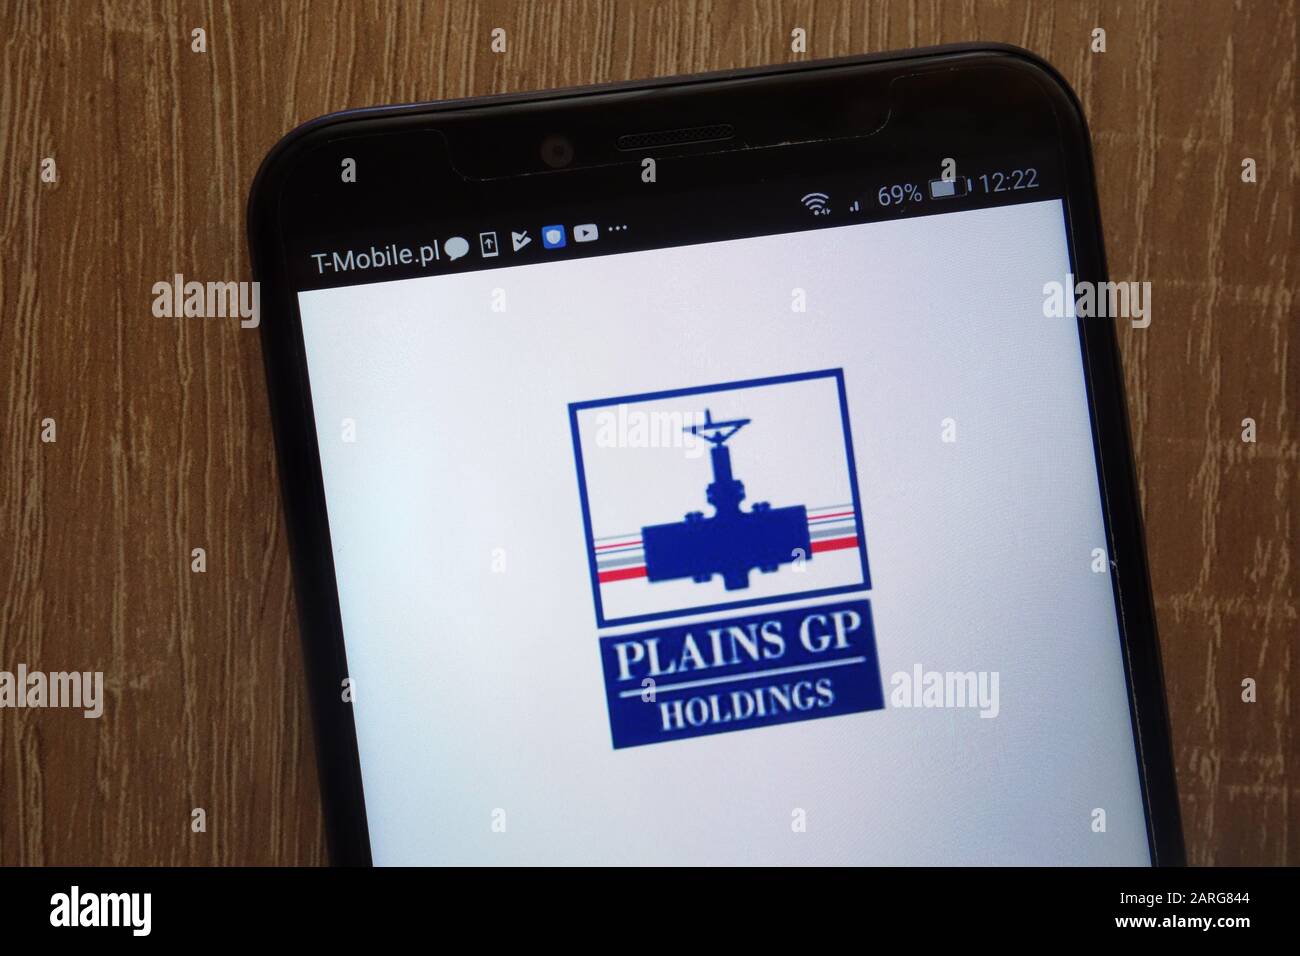 El logotipo de Plains GP Holdings se muestra en un smartphone moderno Foto de stock